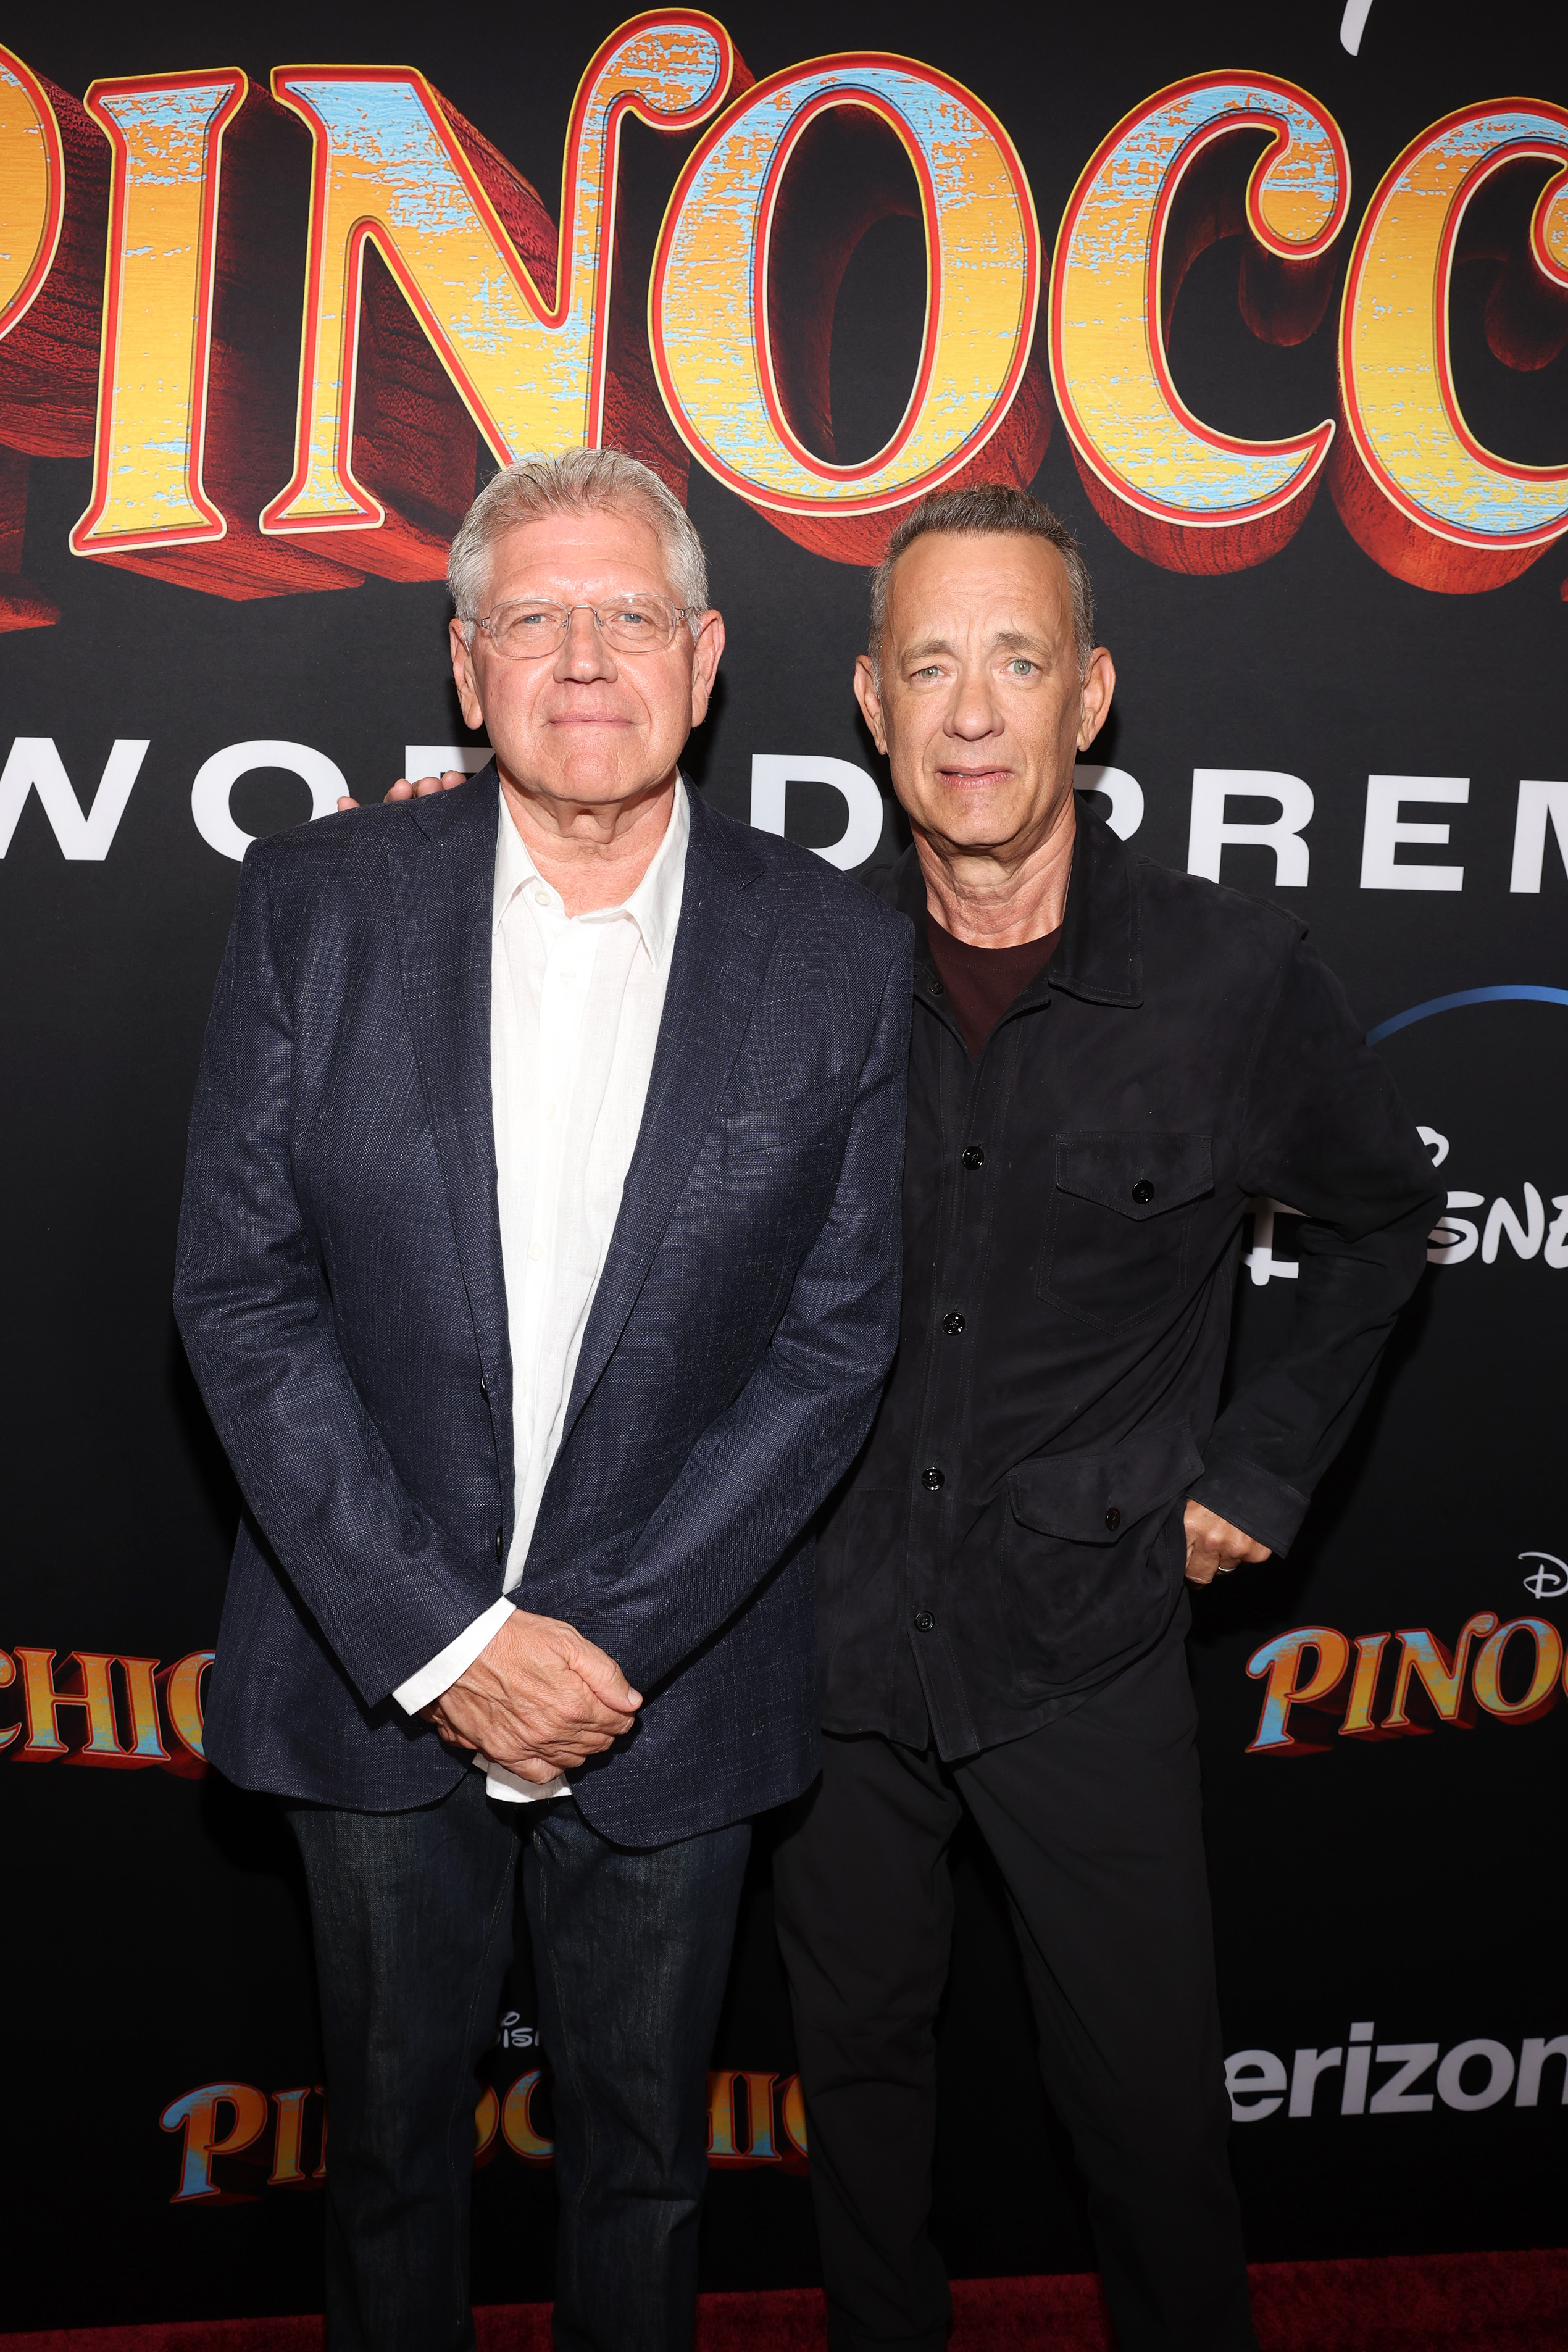 Robert Zemeckis y Tom Hanks en el estreno mundial de "Pinocho" en Burbank, California, el 7 de septiembre de 2022. | Fuente: Getty Images